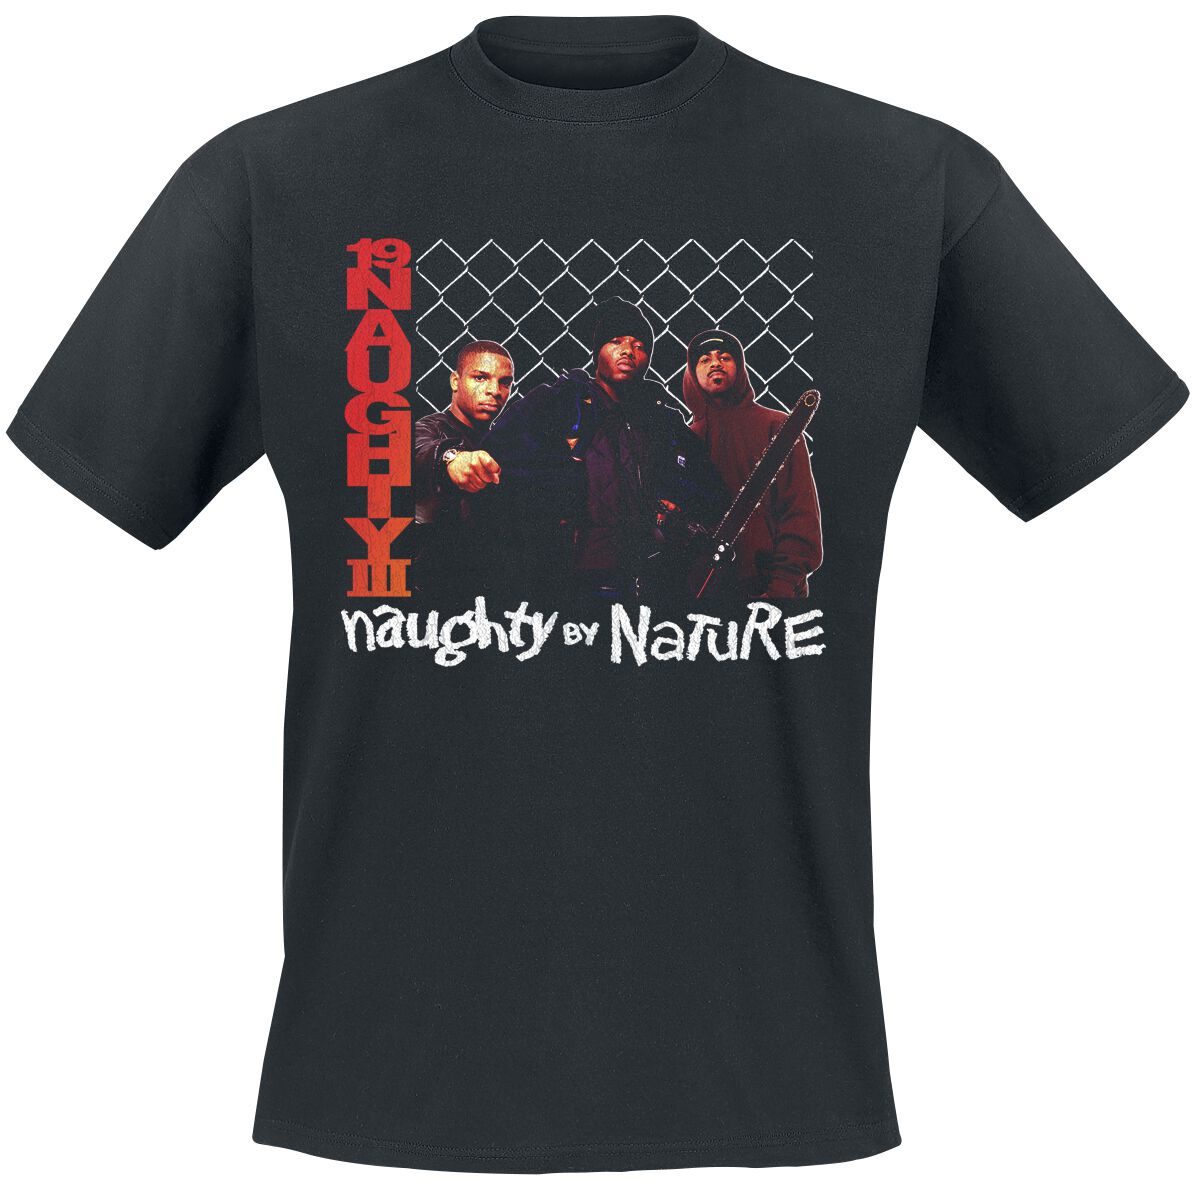 Naughty by Nature 19 Naughty 111 T-Shirt schwarz in XXL